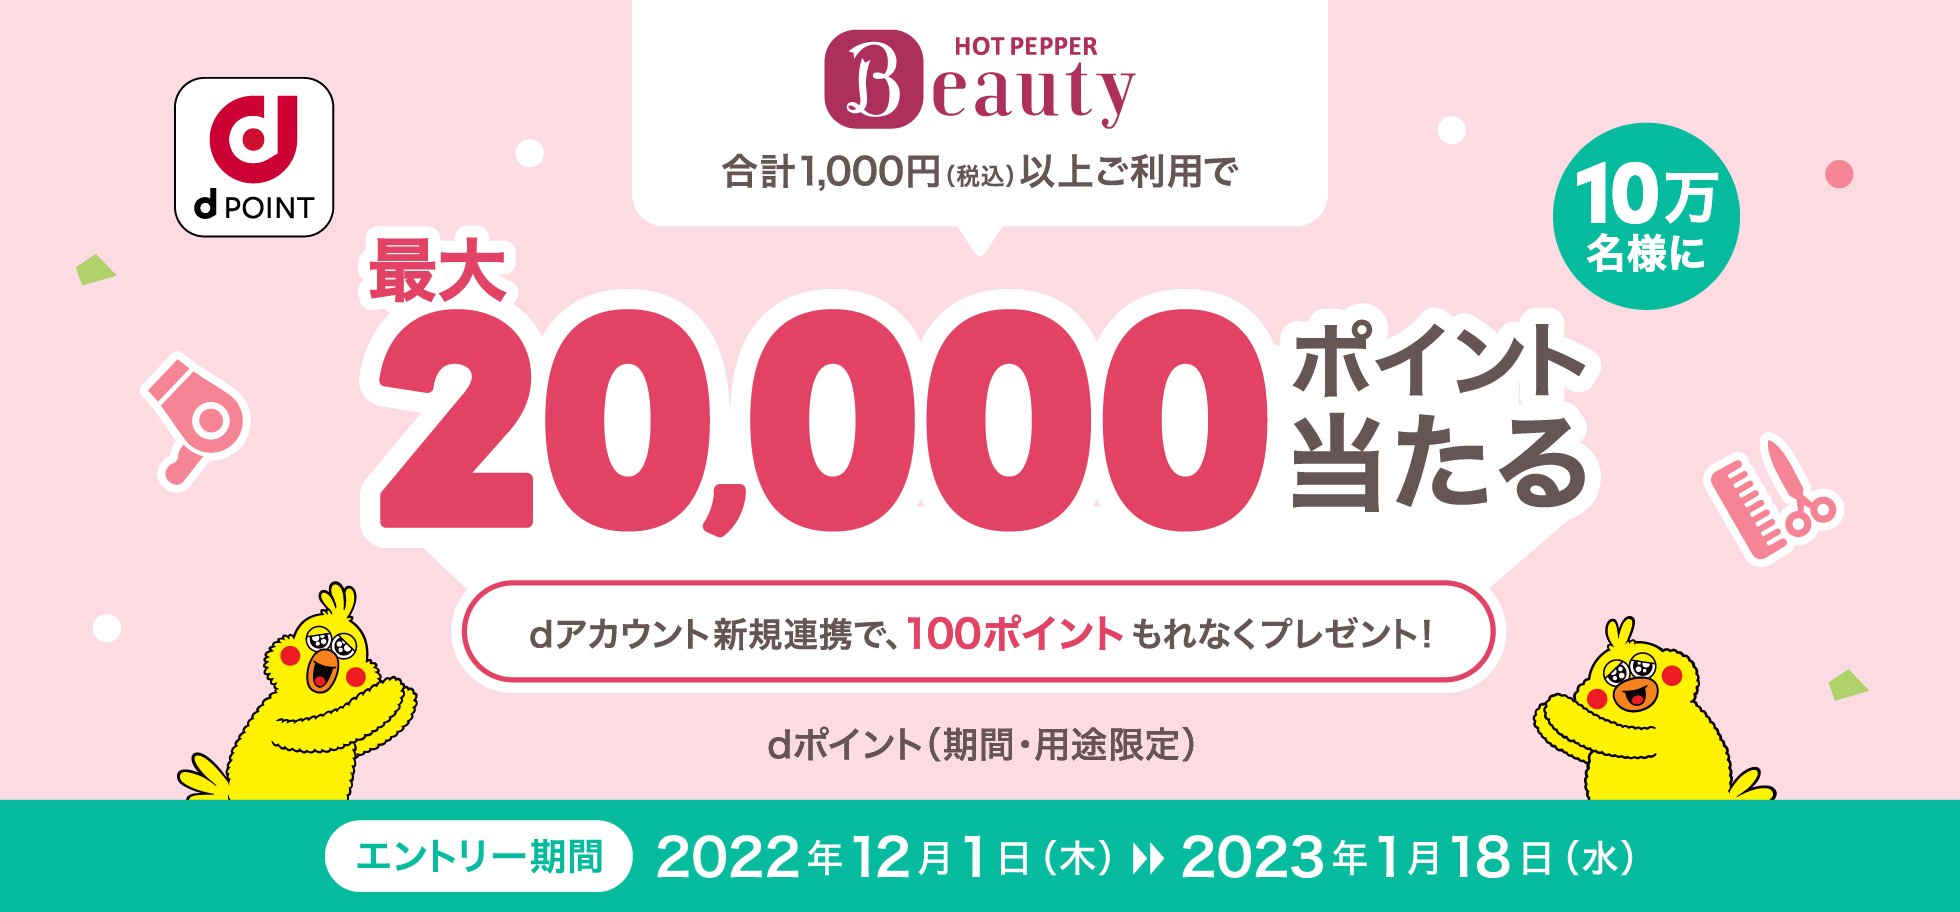 「HOT PEPPER Beauty」合計1,000円(税込)以上のご利用で、最大20,000ポイント当たる！dポイント(期間・用途限定)